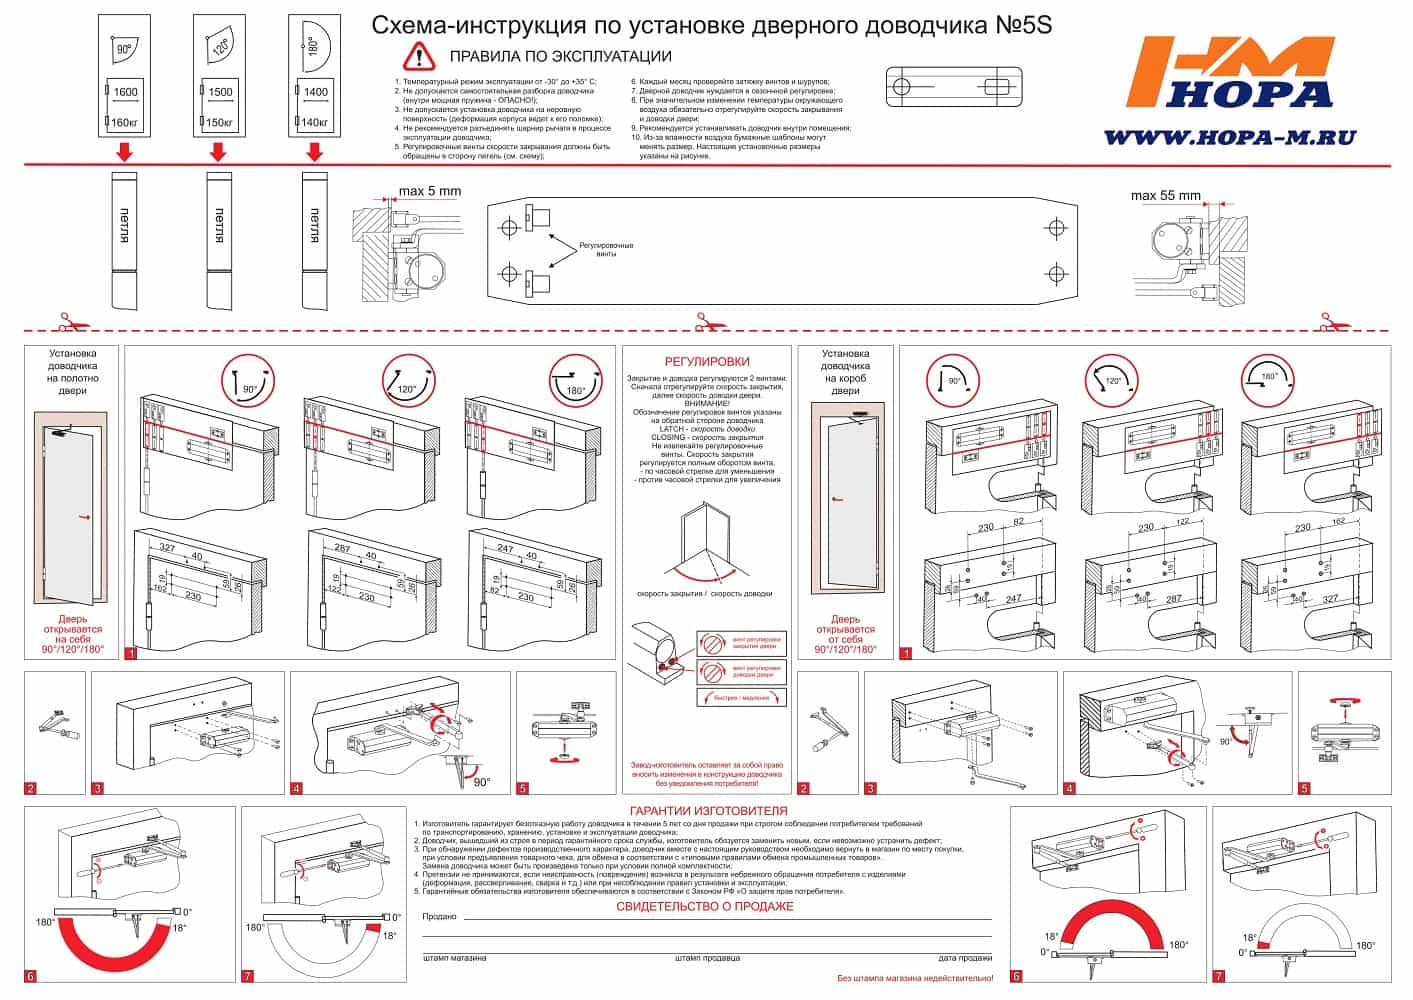 Схема-инструкция по установке дверного доводчика Нора-М 5S 1